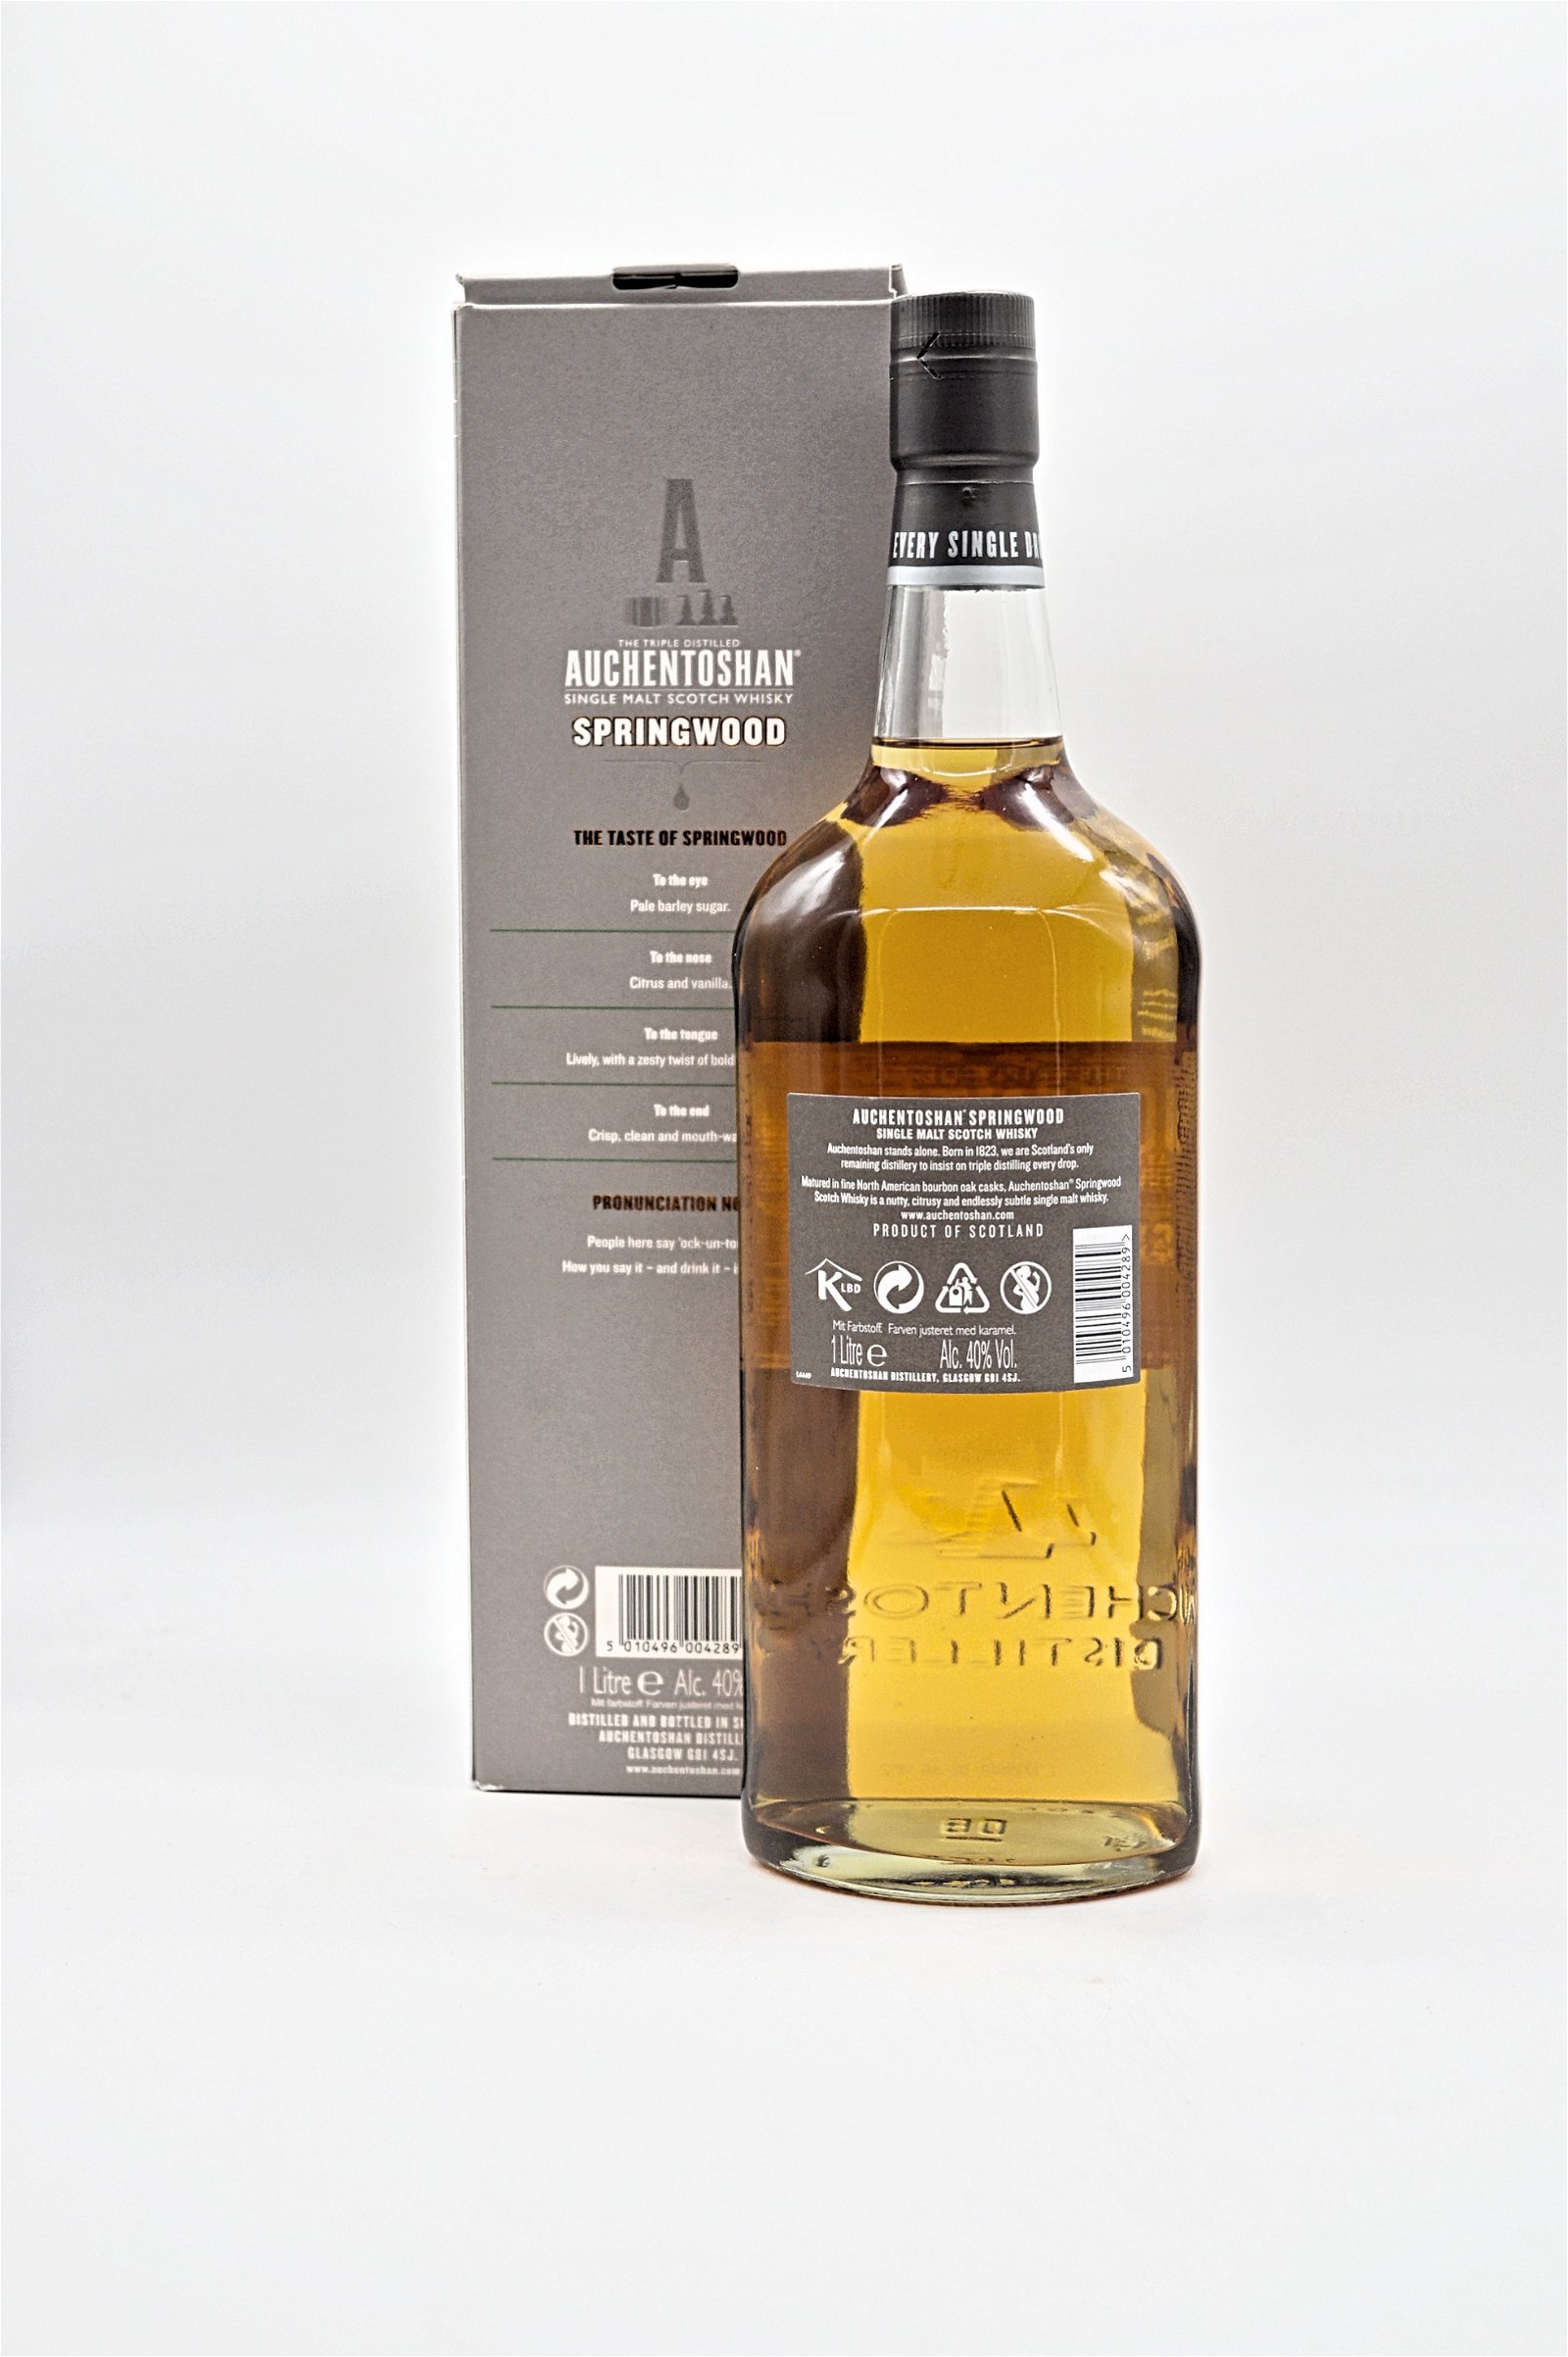 Auchentoshan Springwood Single Malt Scotch Whisky